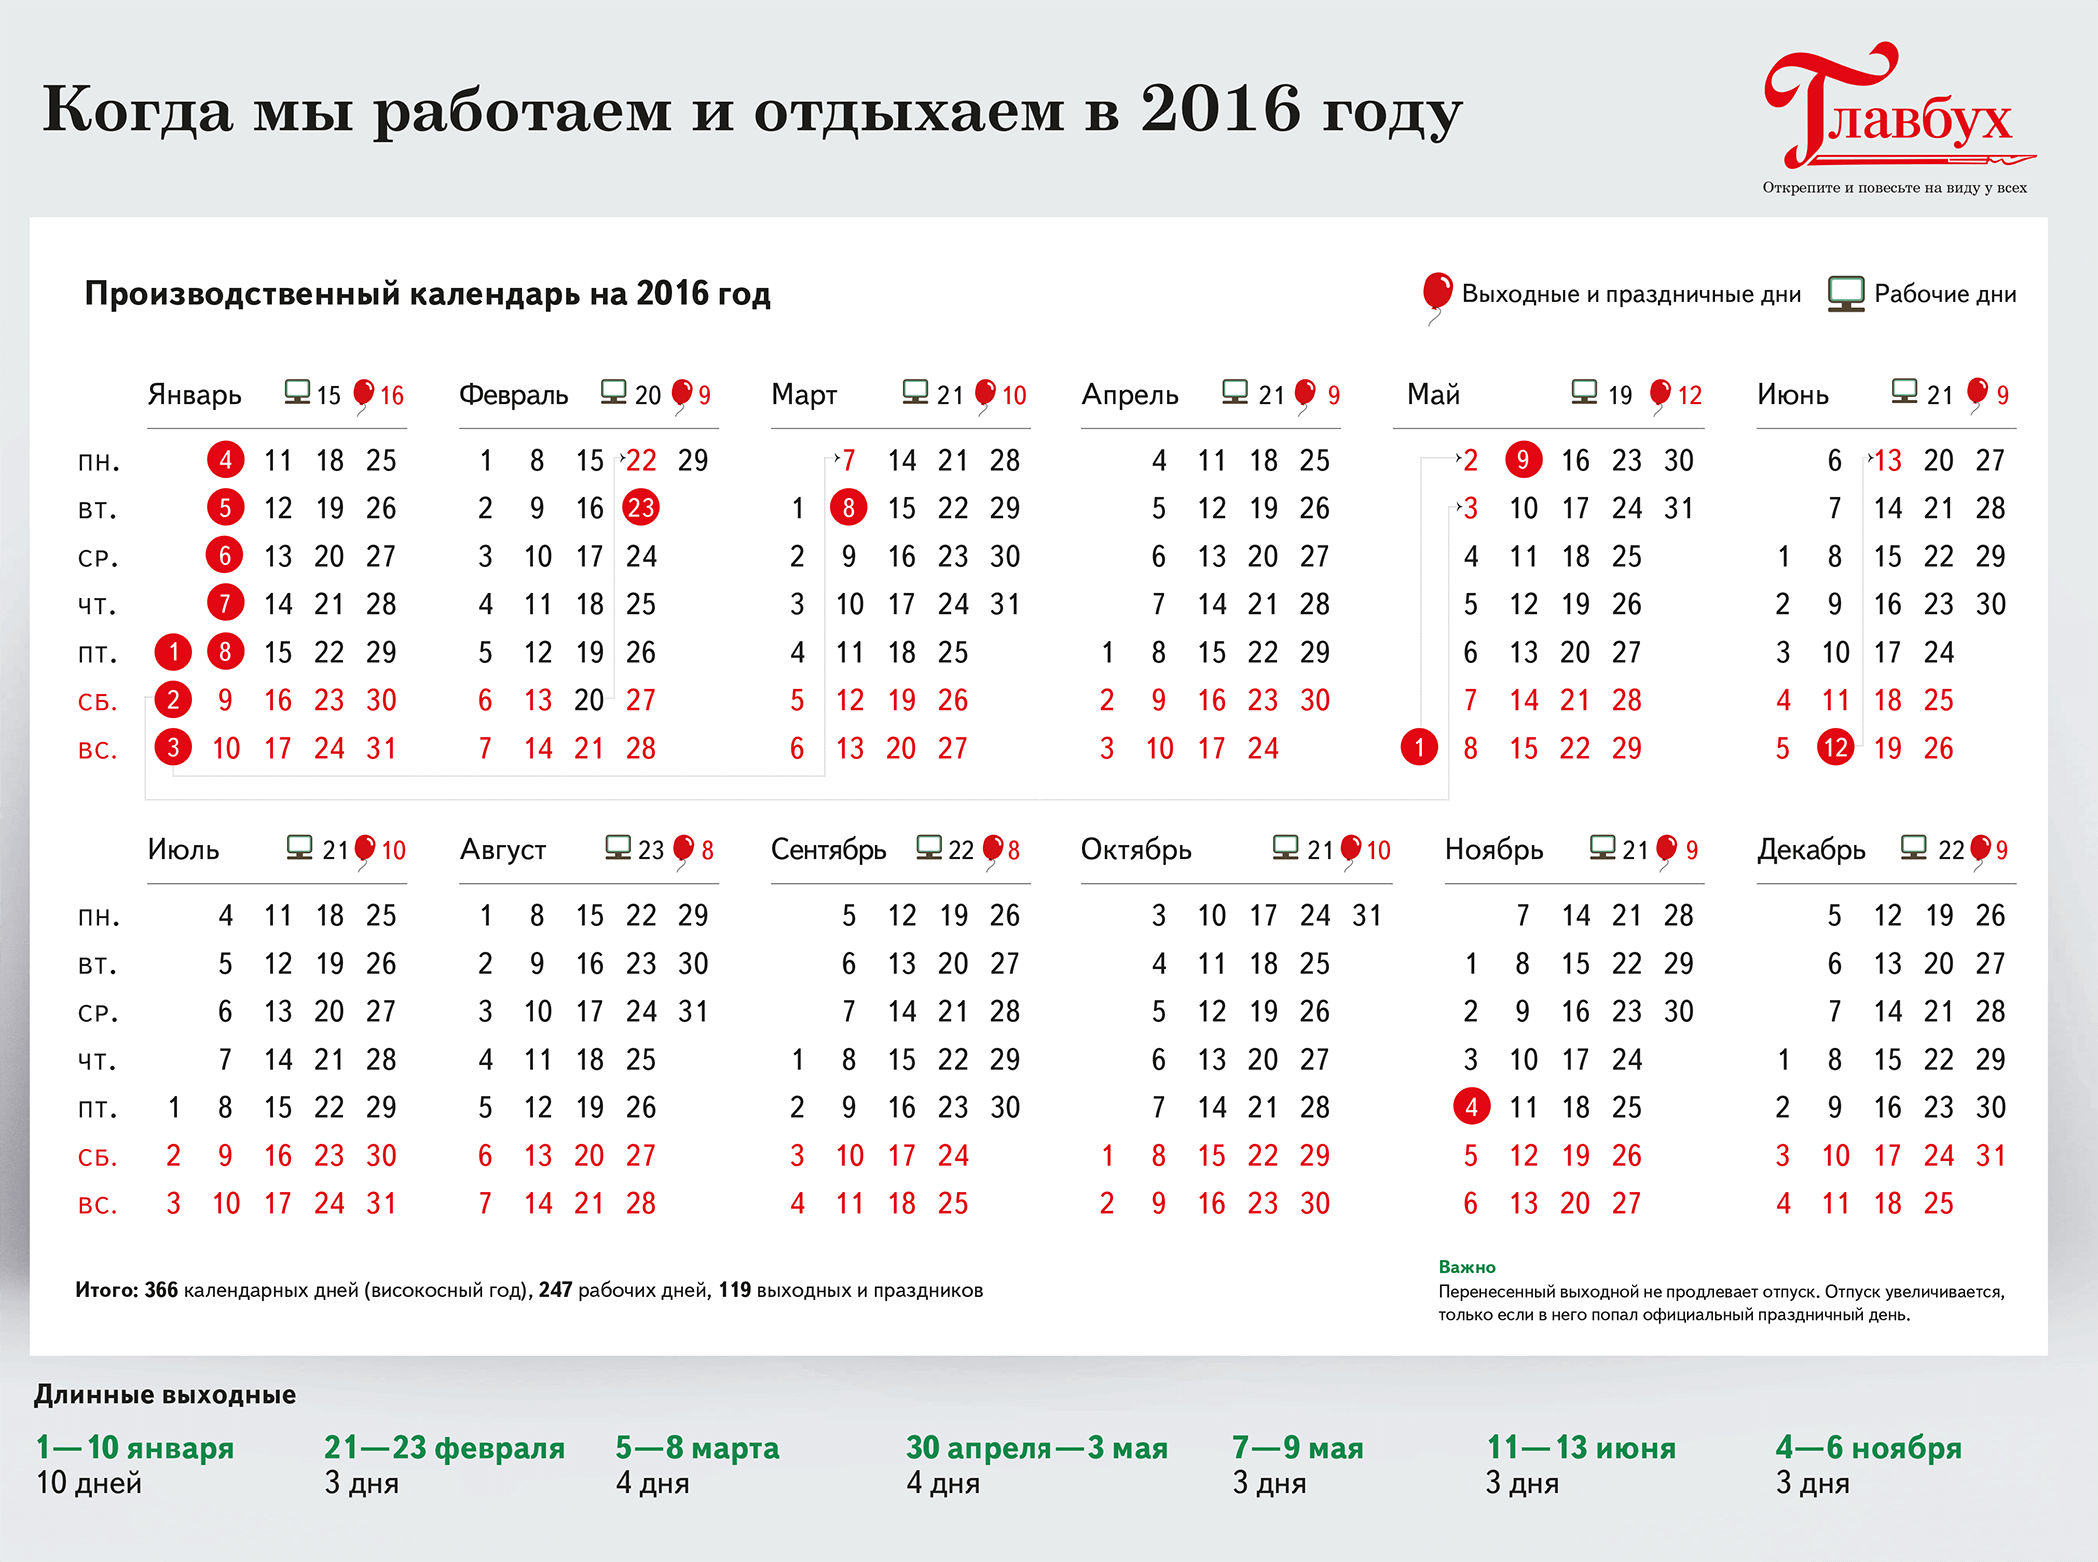 Праздничные рабочие дни. Календарь праздников. Календарь праздников 2016. Выходные и праздничные дни в 2016 году. 4 июня 2017 год